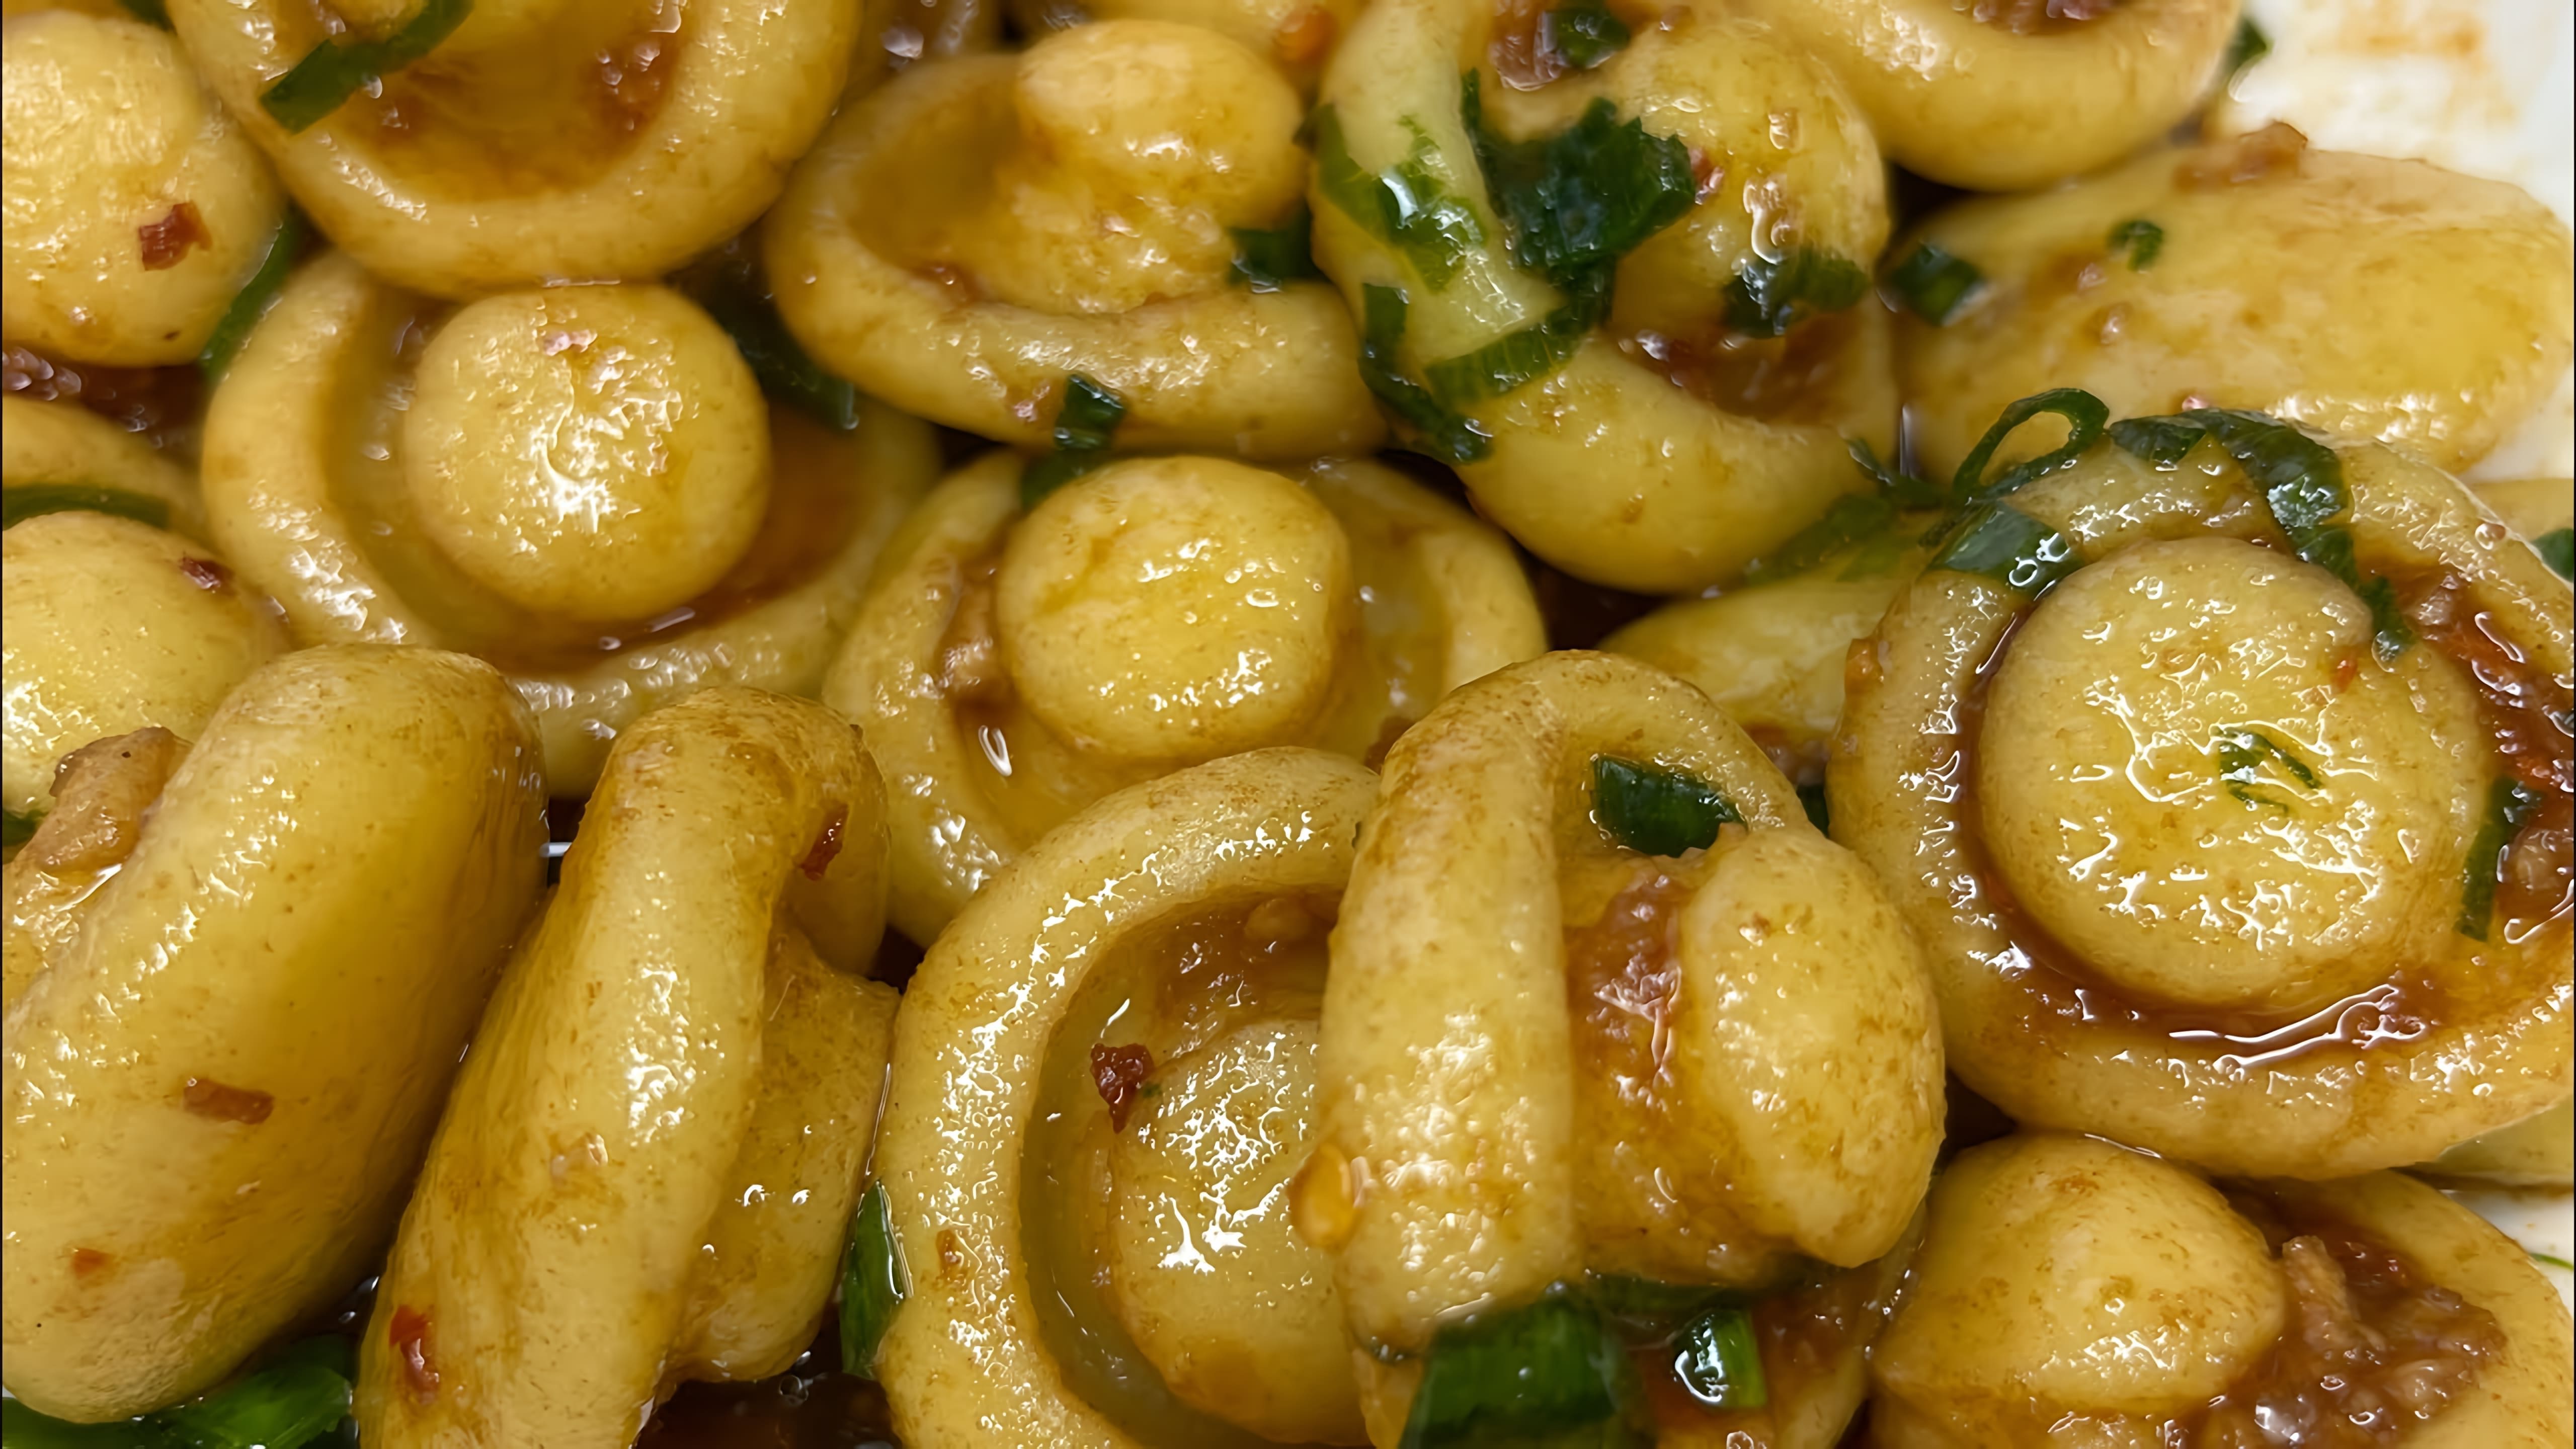 В этом видео демонстрируется рецепт приготовления вкусного картофеля с оригинальной подачей в виде грибов